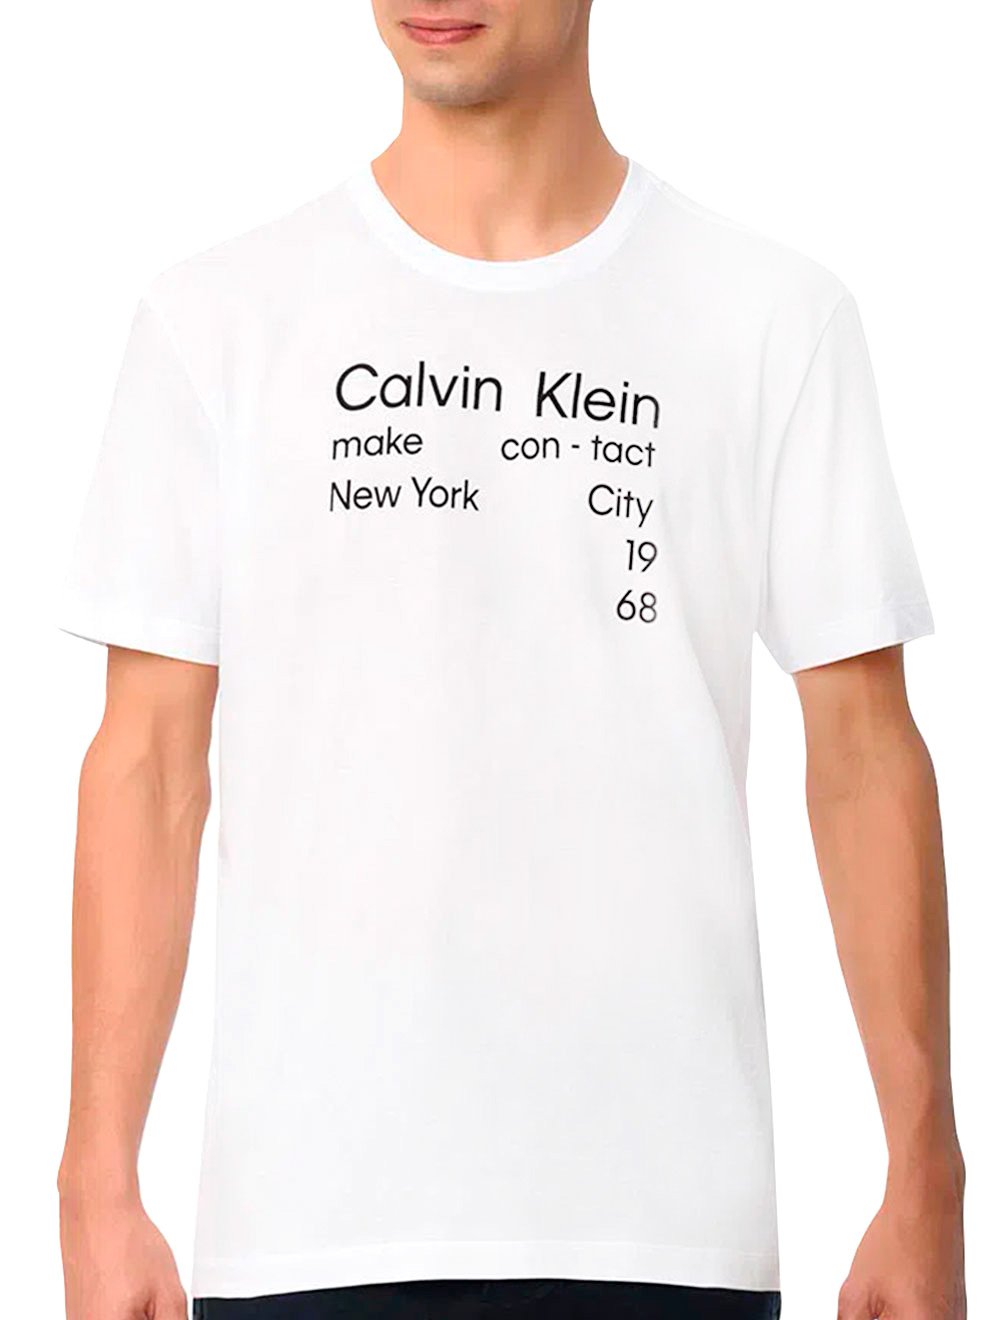 Camiseta Calvin Klein Masculina Make Contact New York Branca